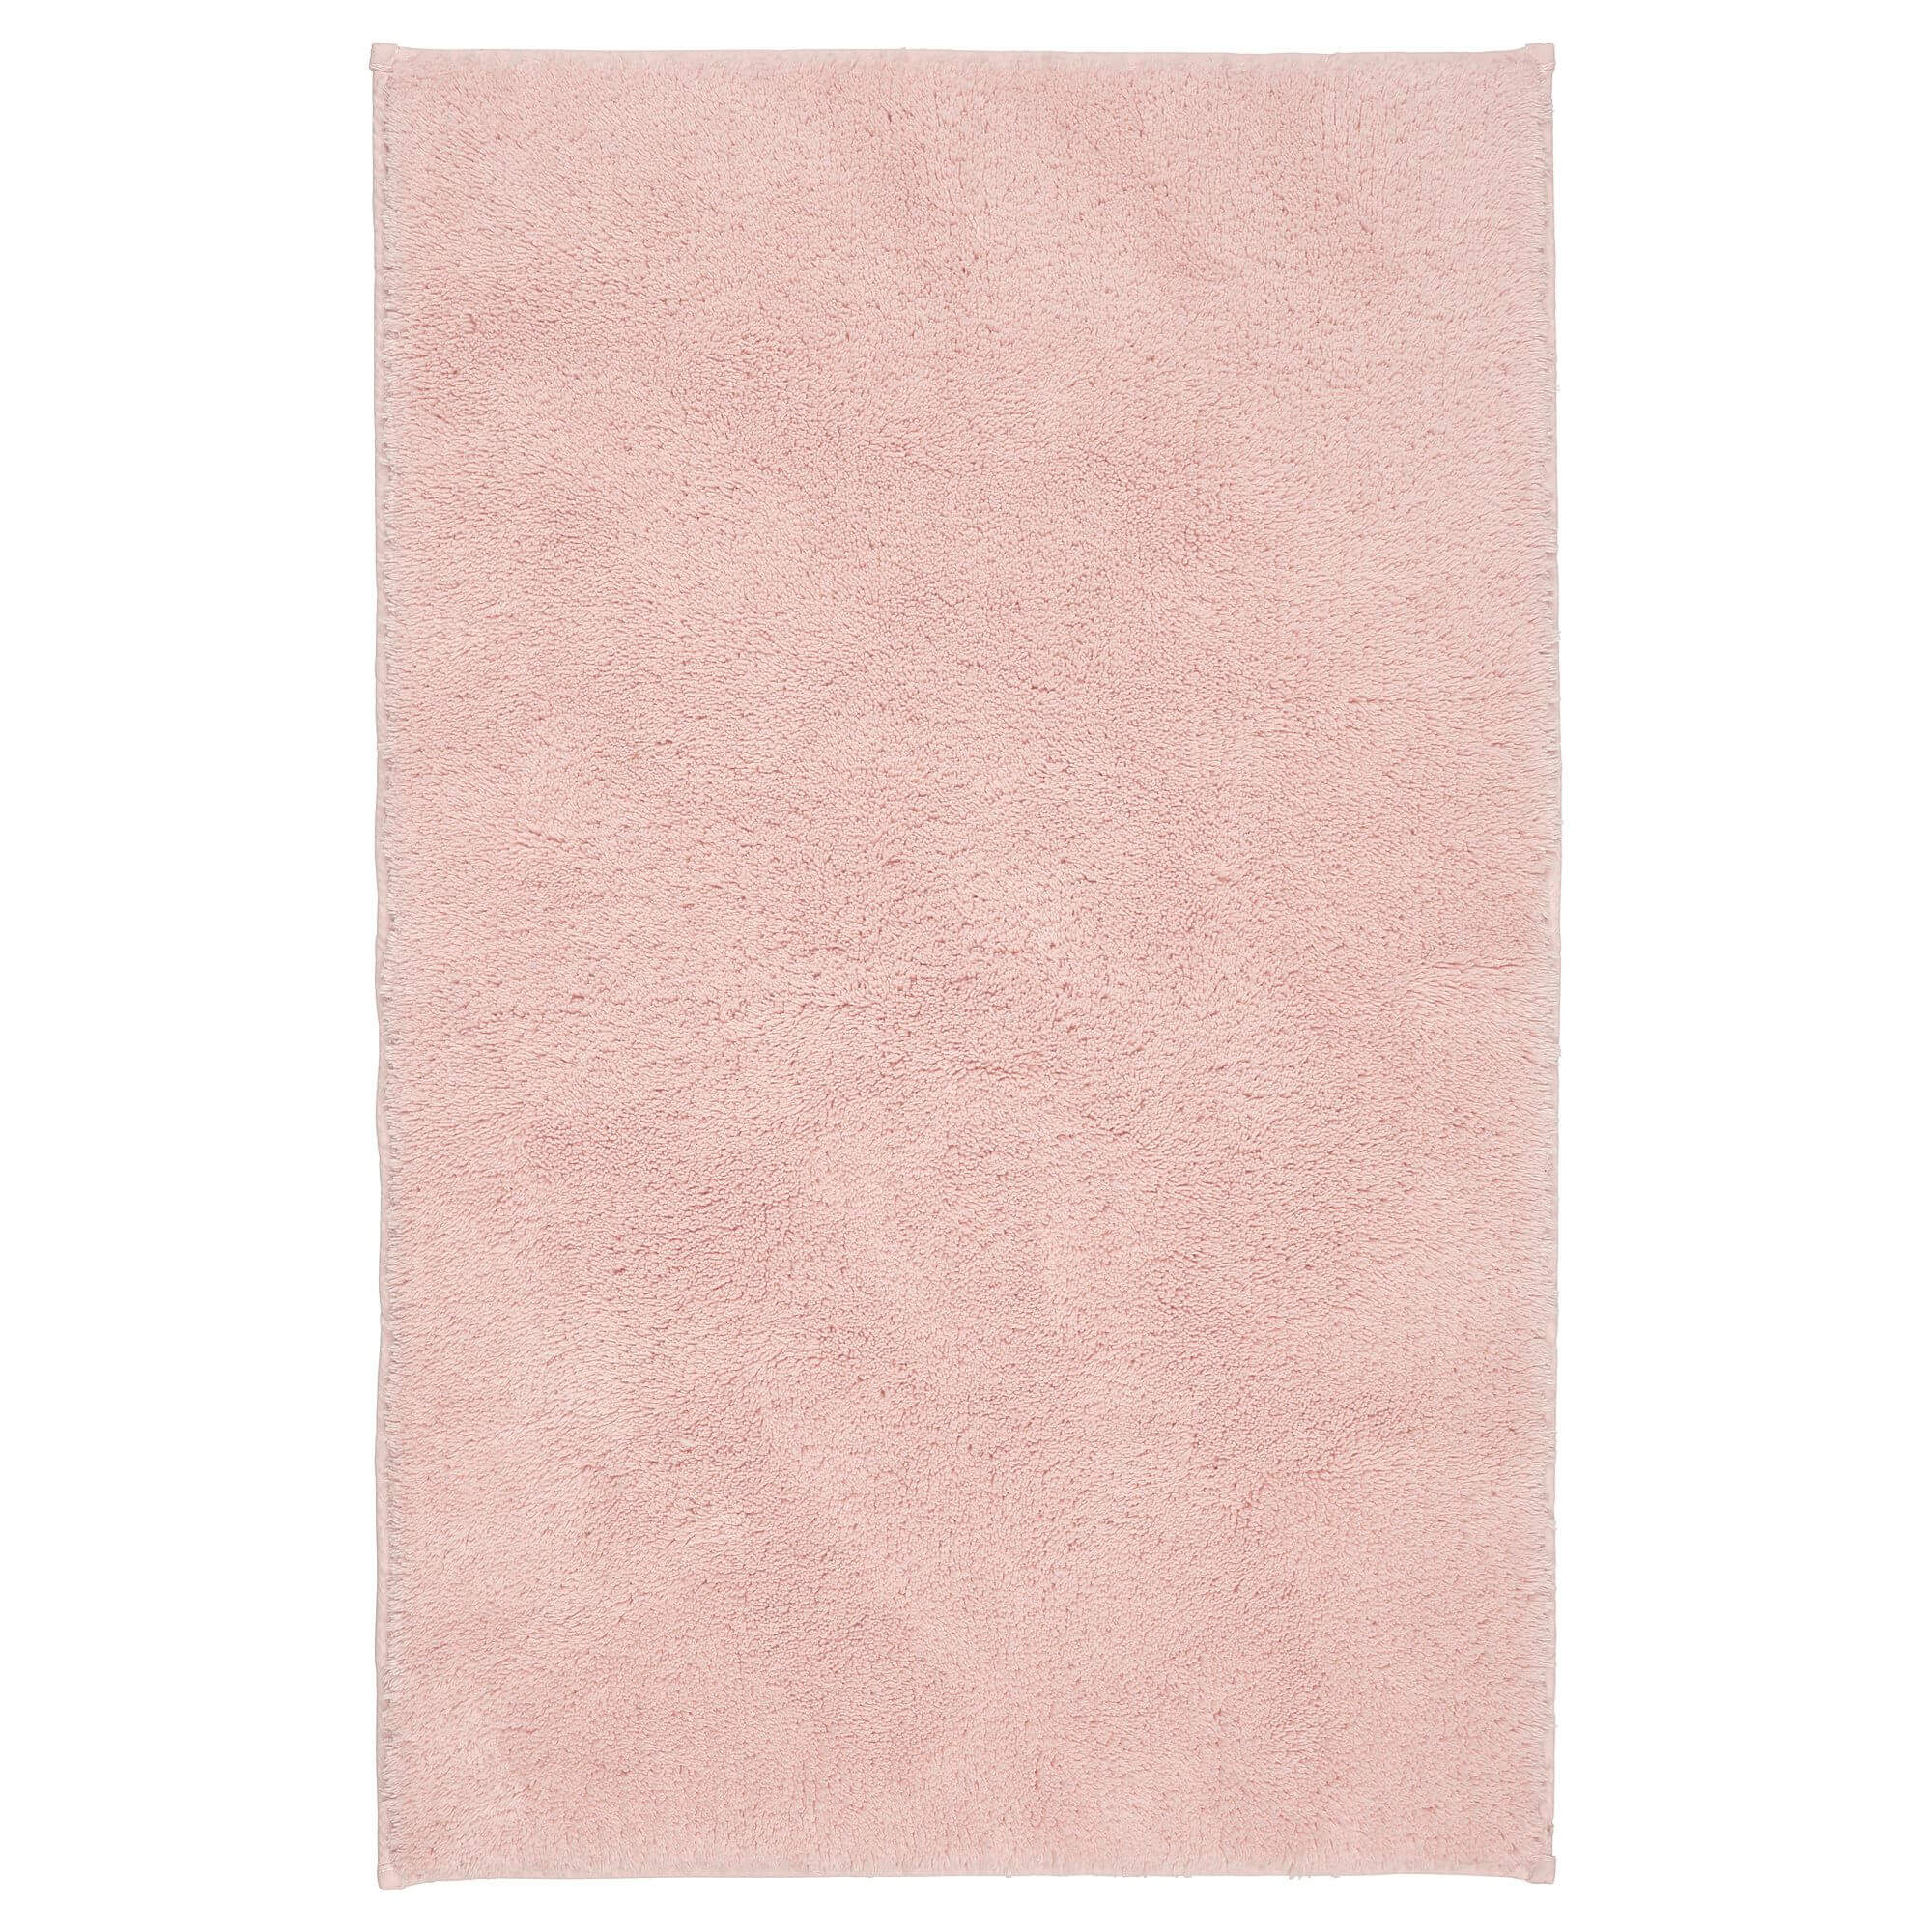 Коврик для ванной Ikea Sodersjon, розовый